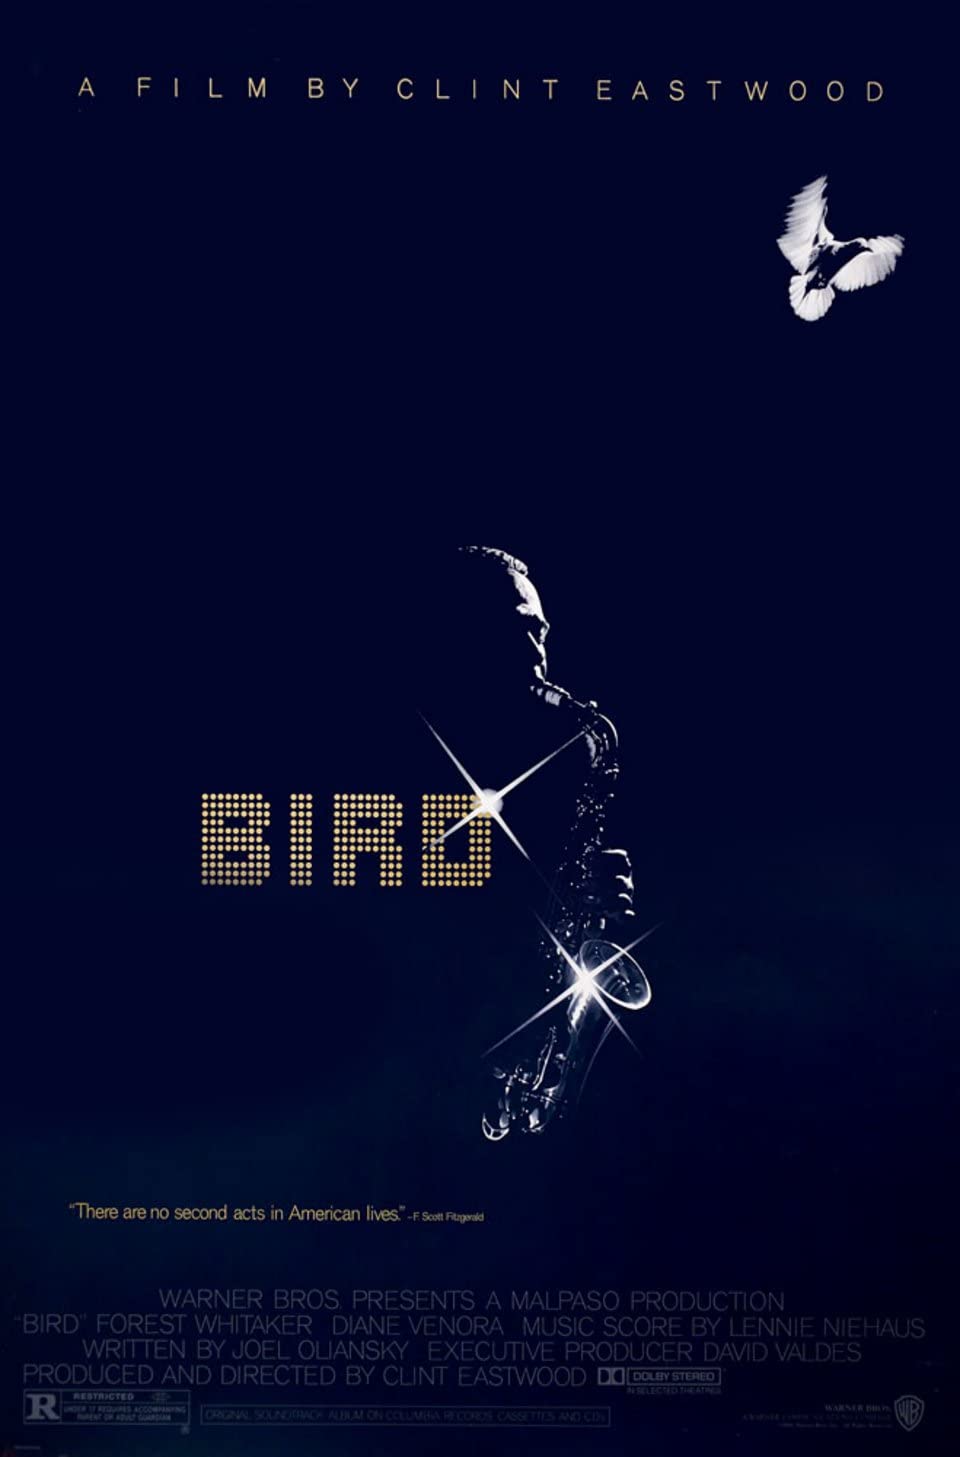 Bird Main Poster